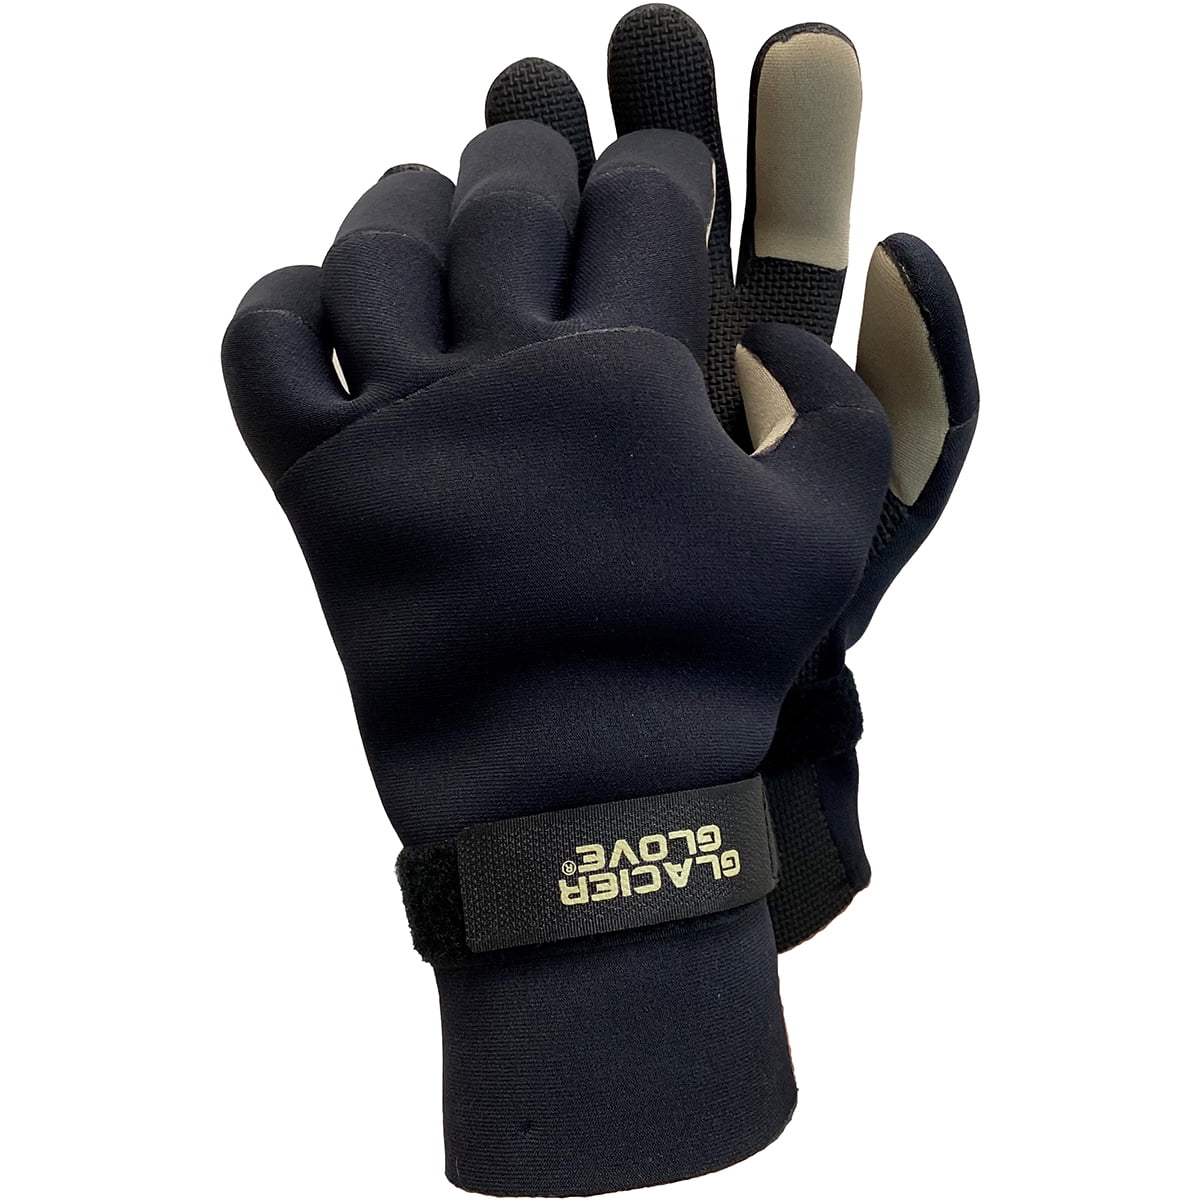 neoprene Glacier Outdoor Gloves medium waterproof fleece lined 